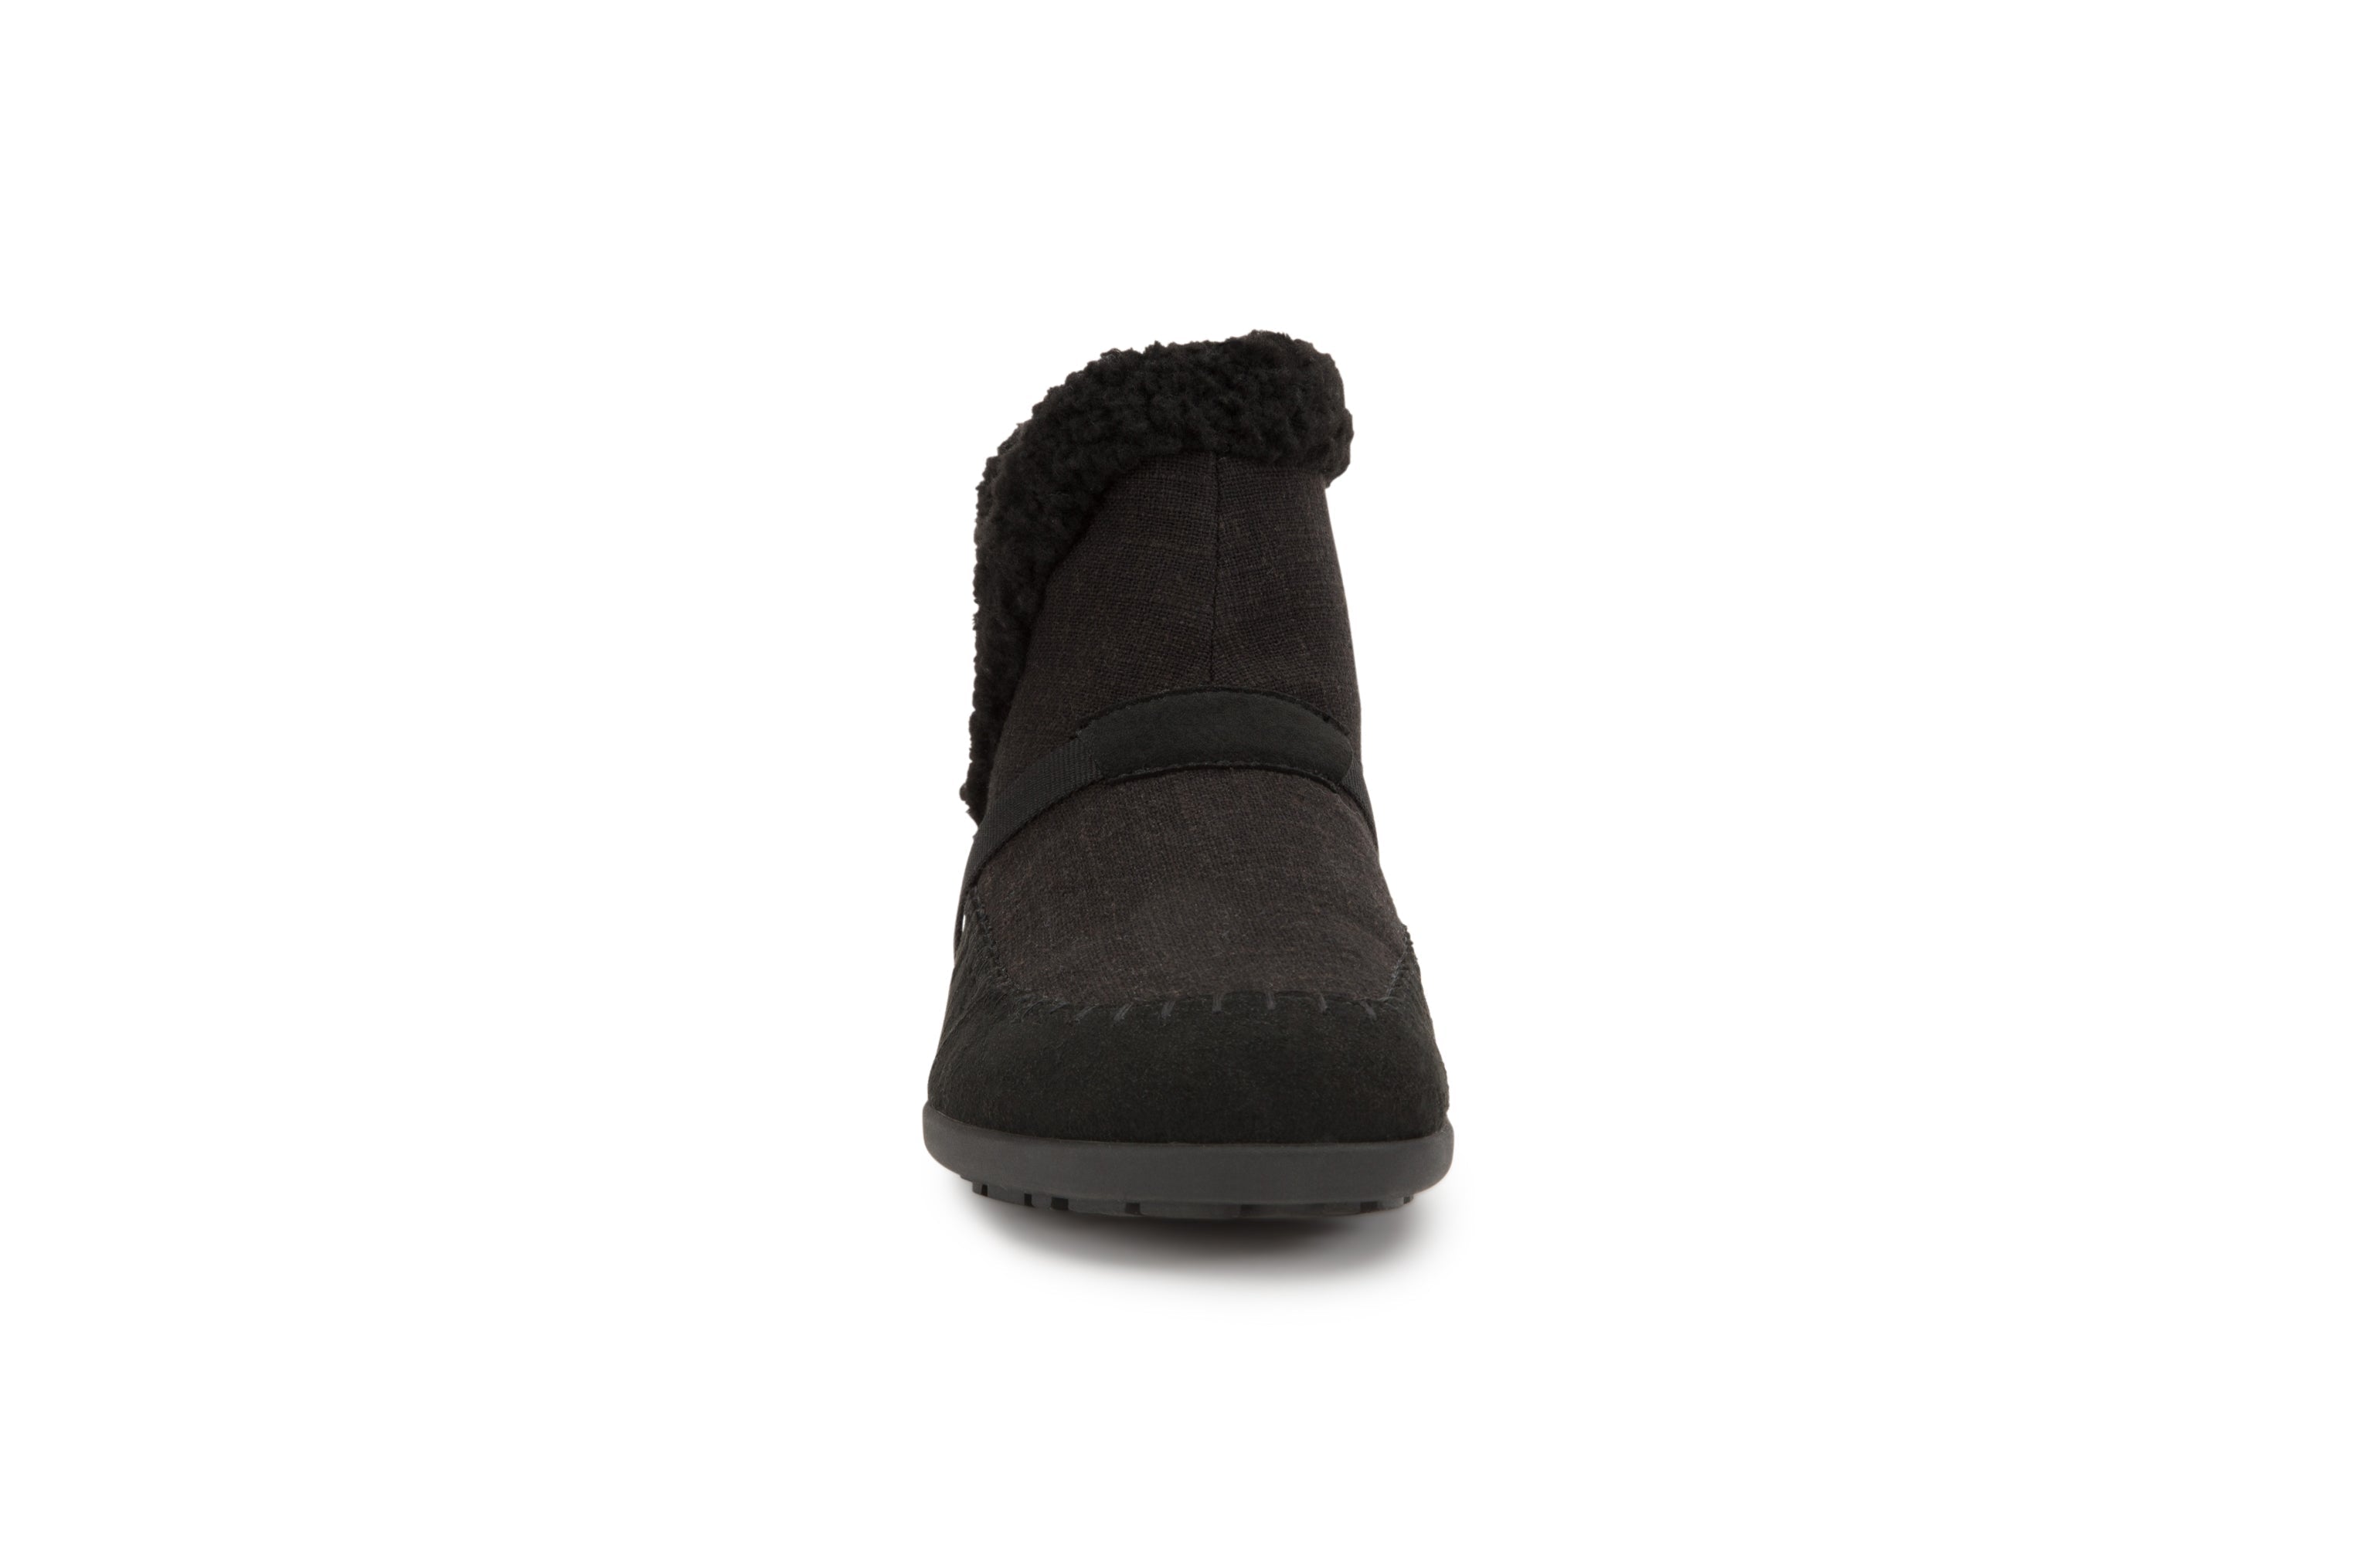 Xero Shoes Ashland barfods kanvas støvler til kvinder i farven black, forfra